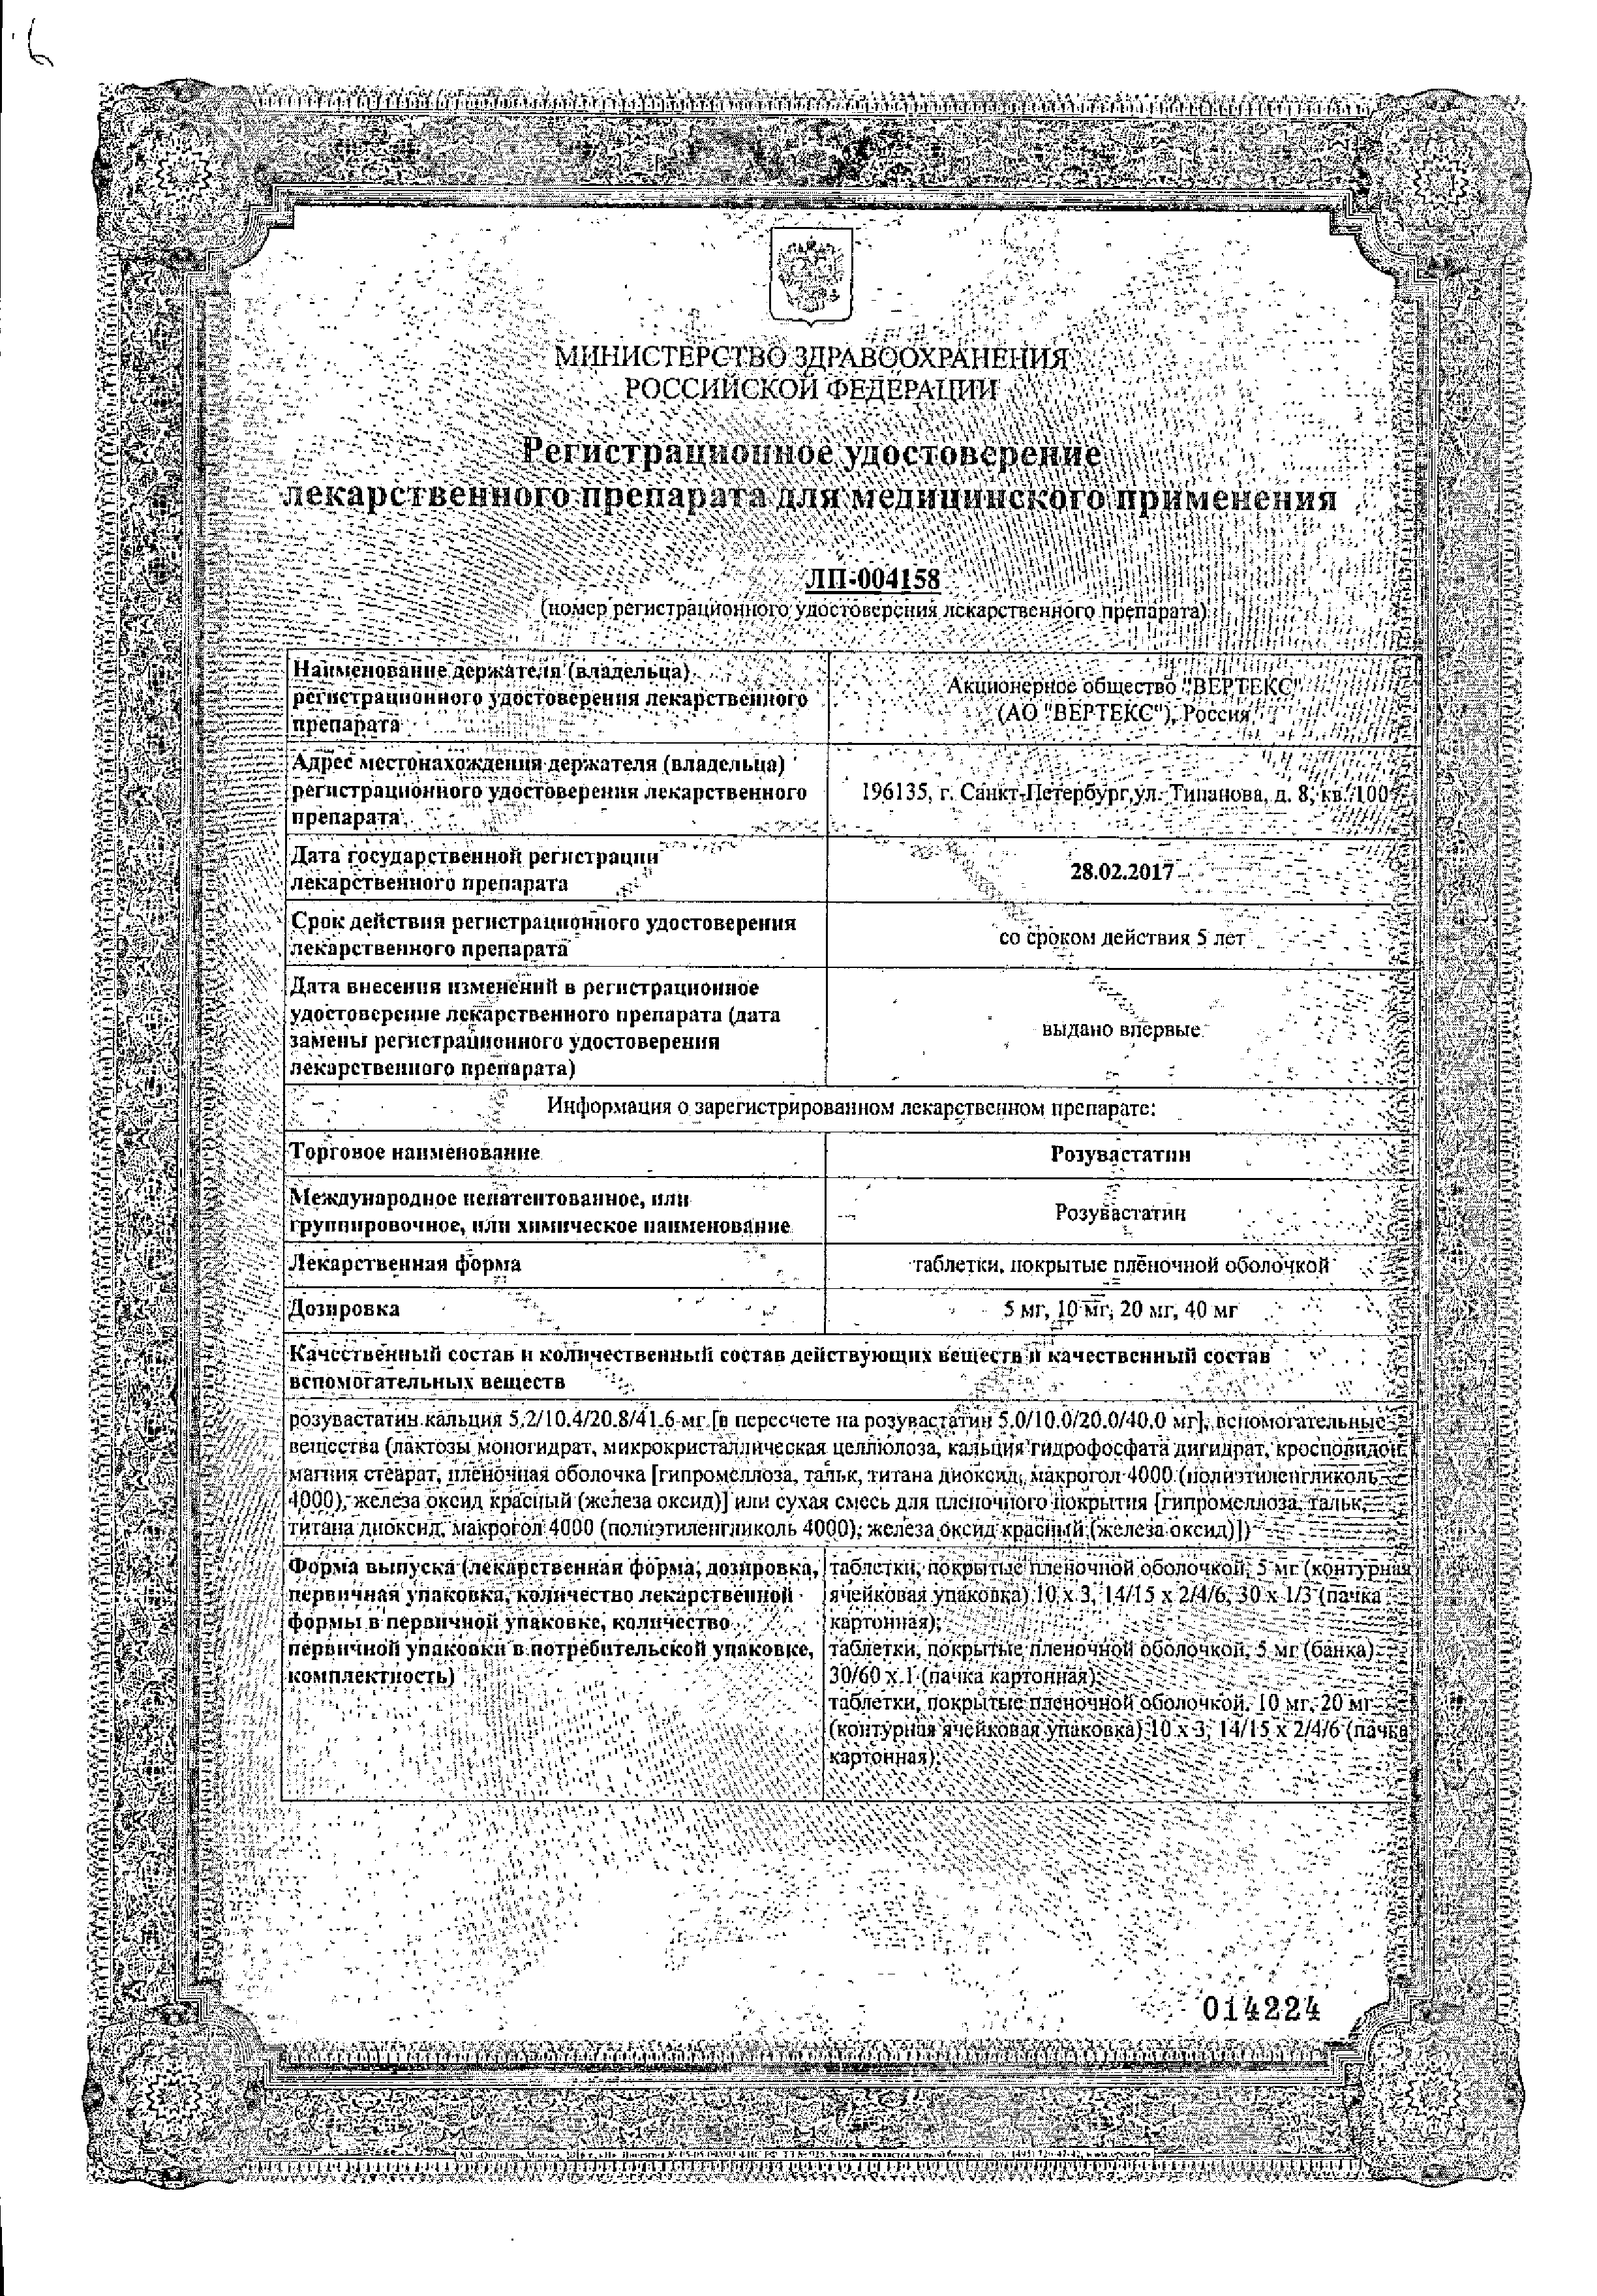 Розувастатин сертификат